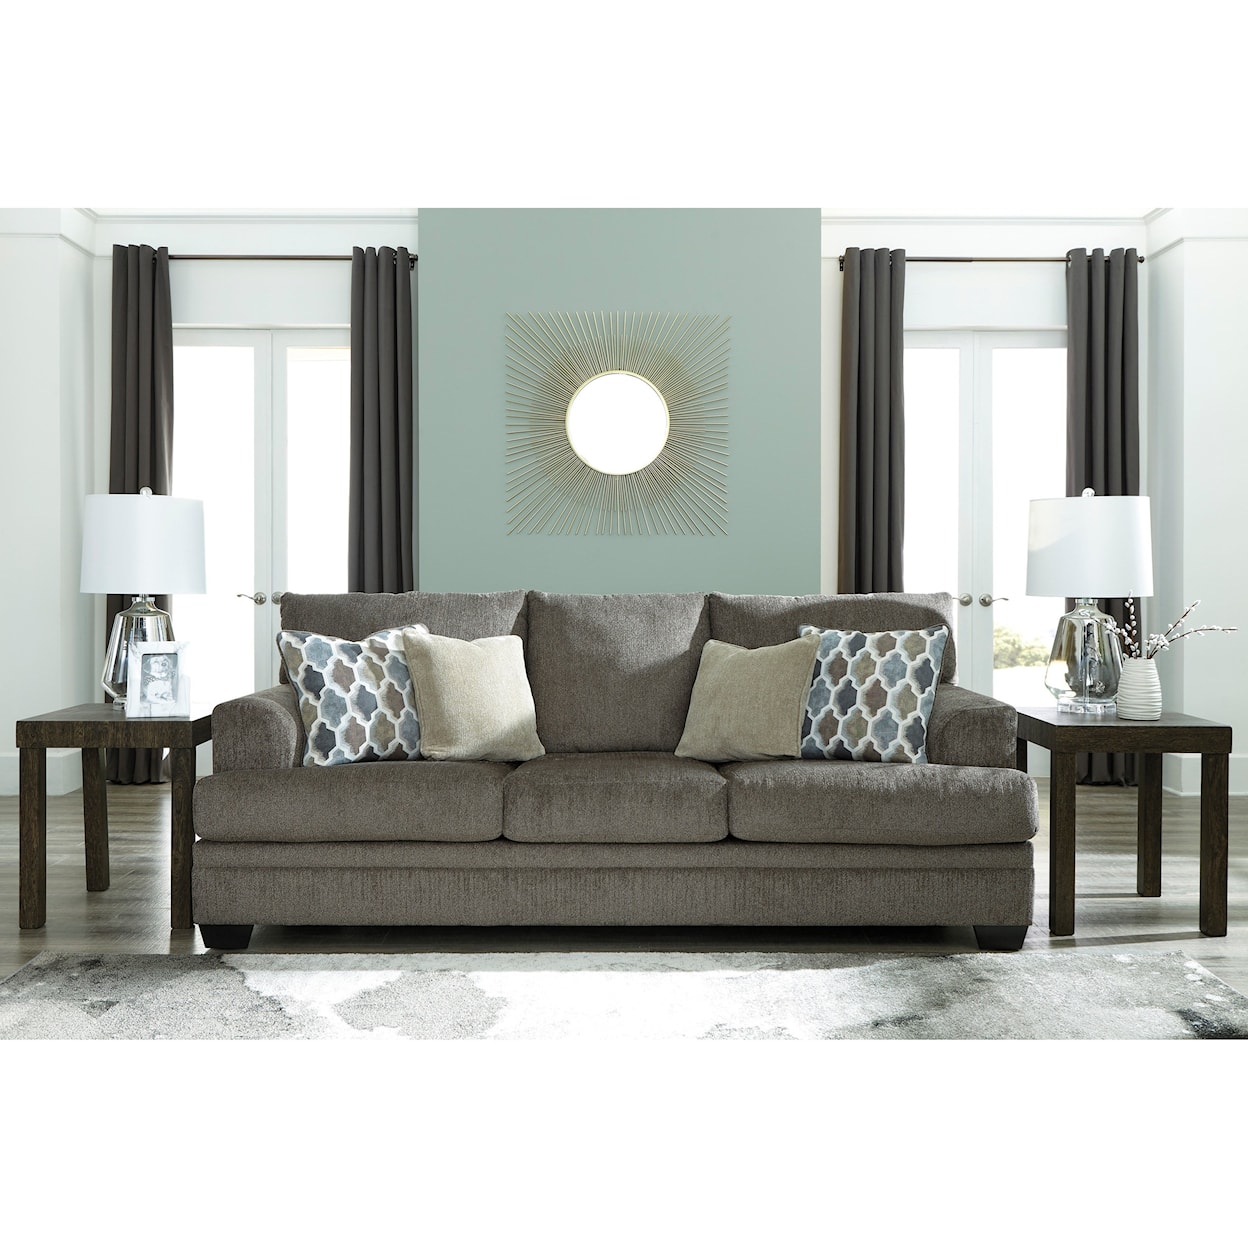 Ashley Furniture Signature Design Dorsten Sofa